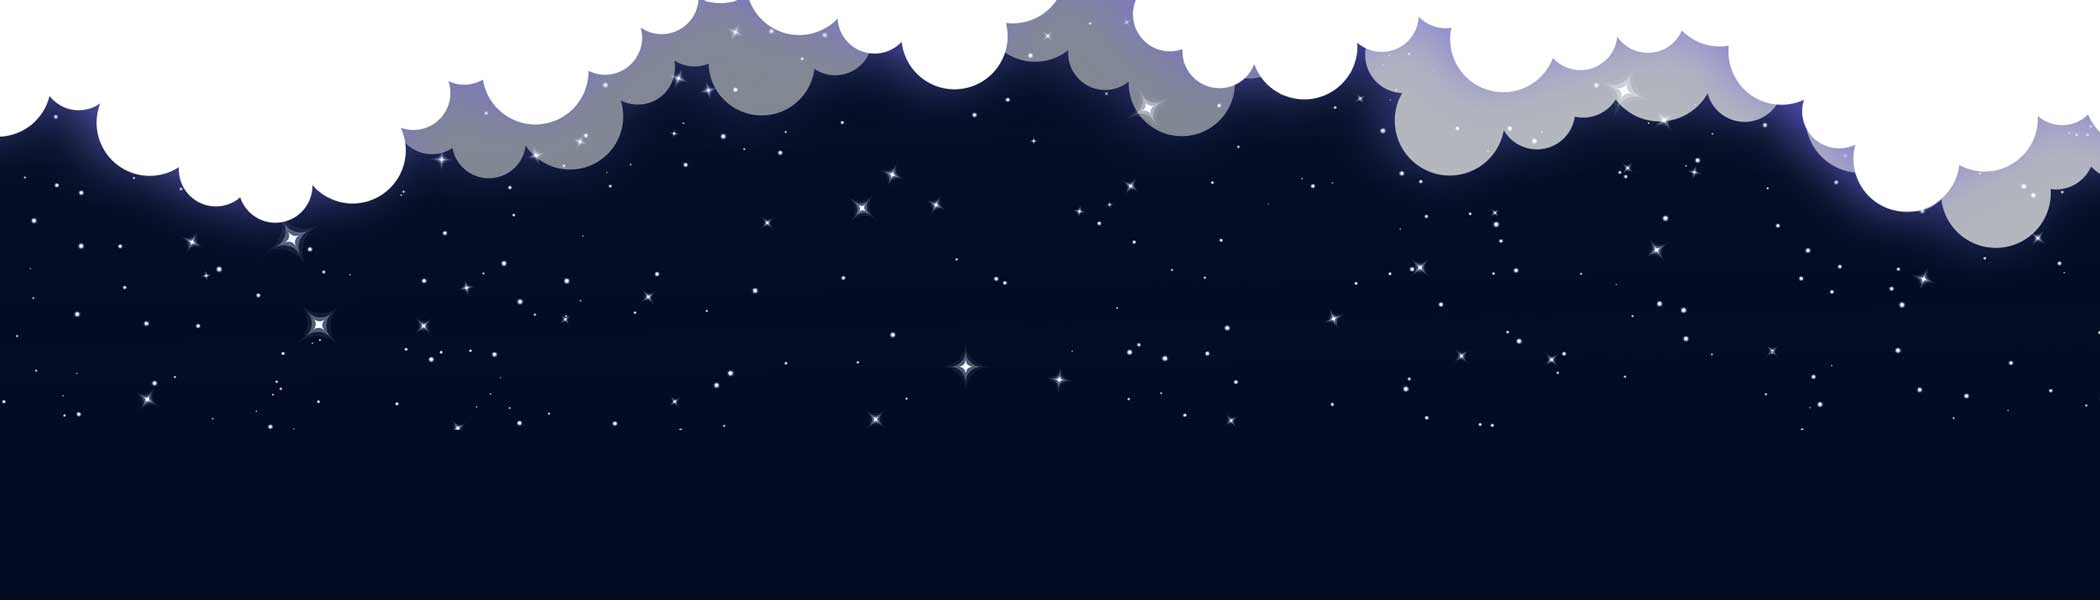 night-sky